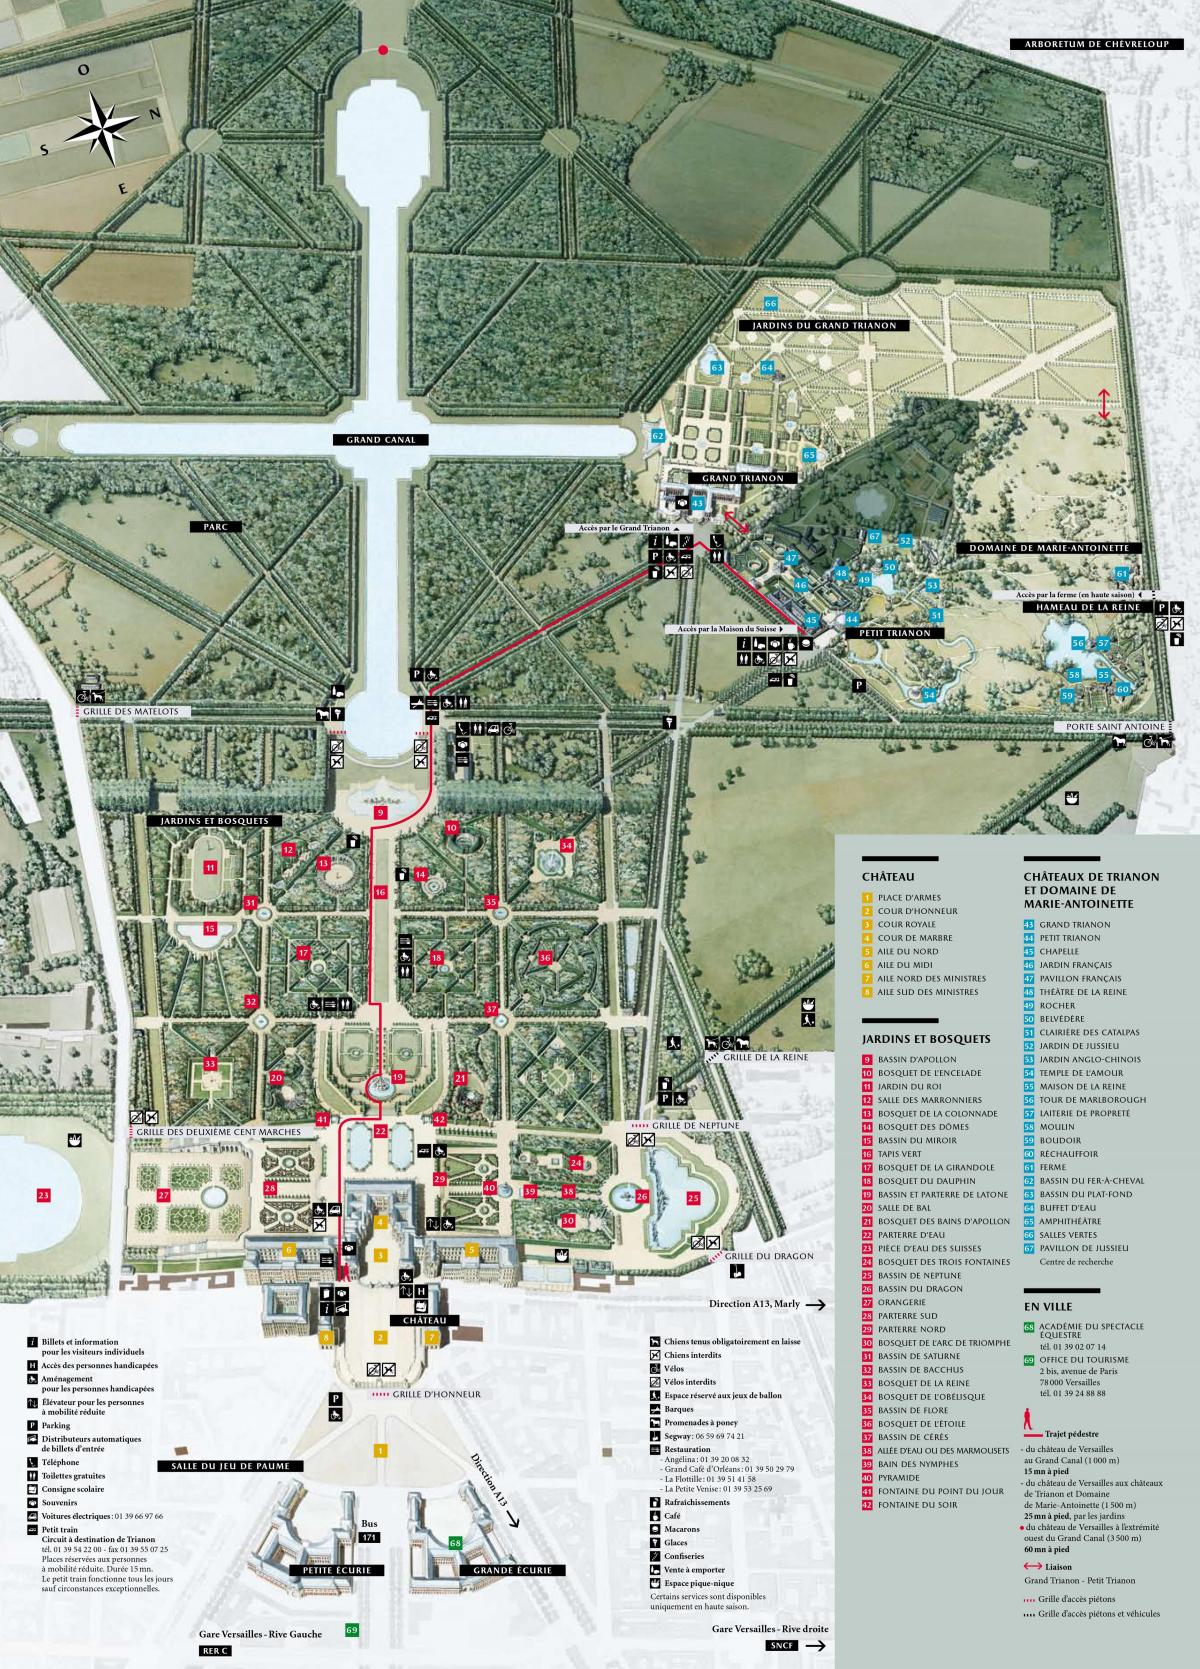 Kort Palads i Versailles